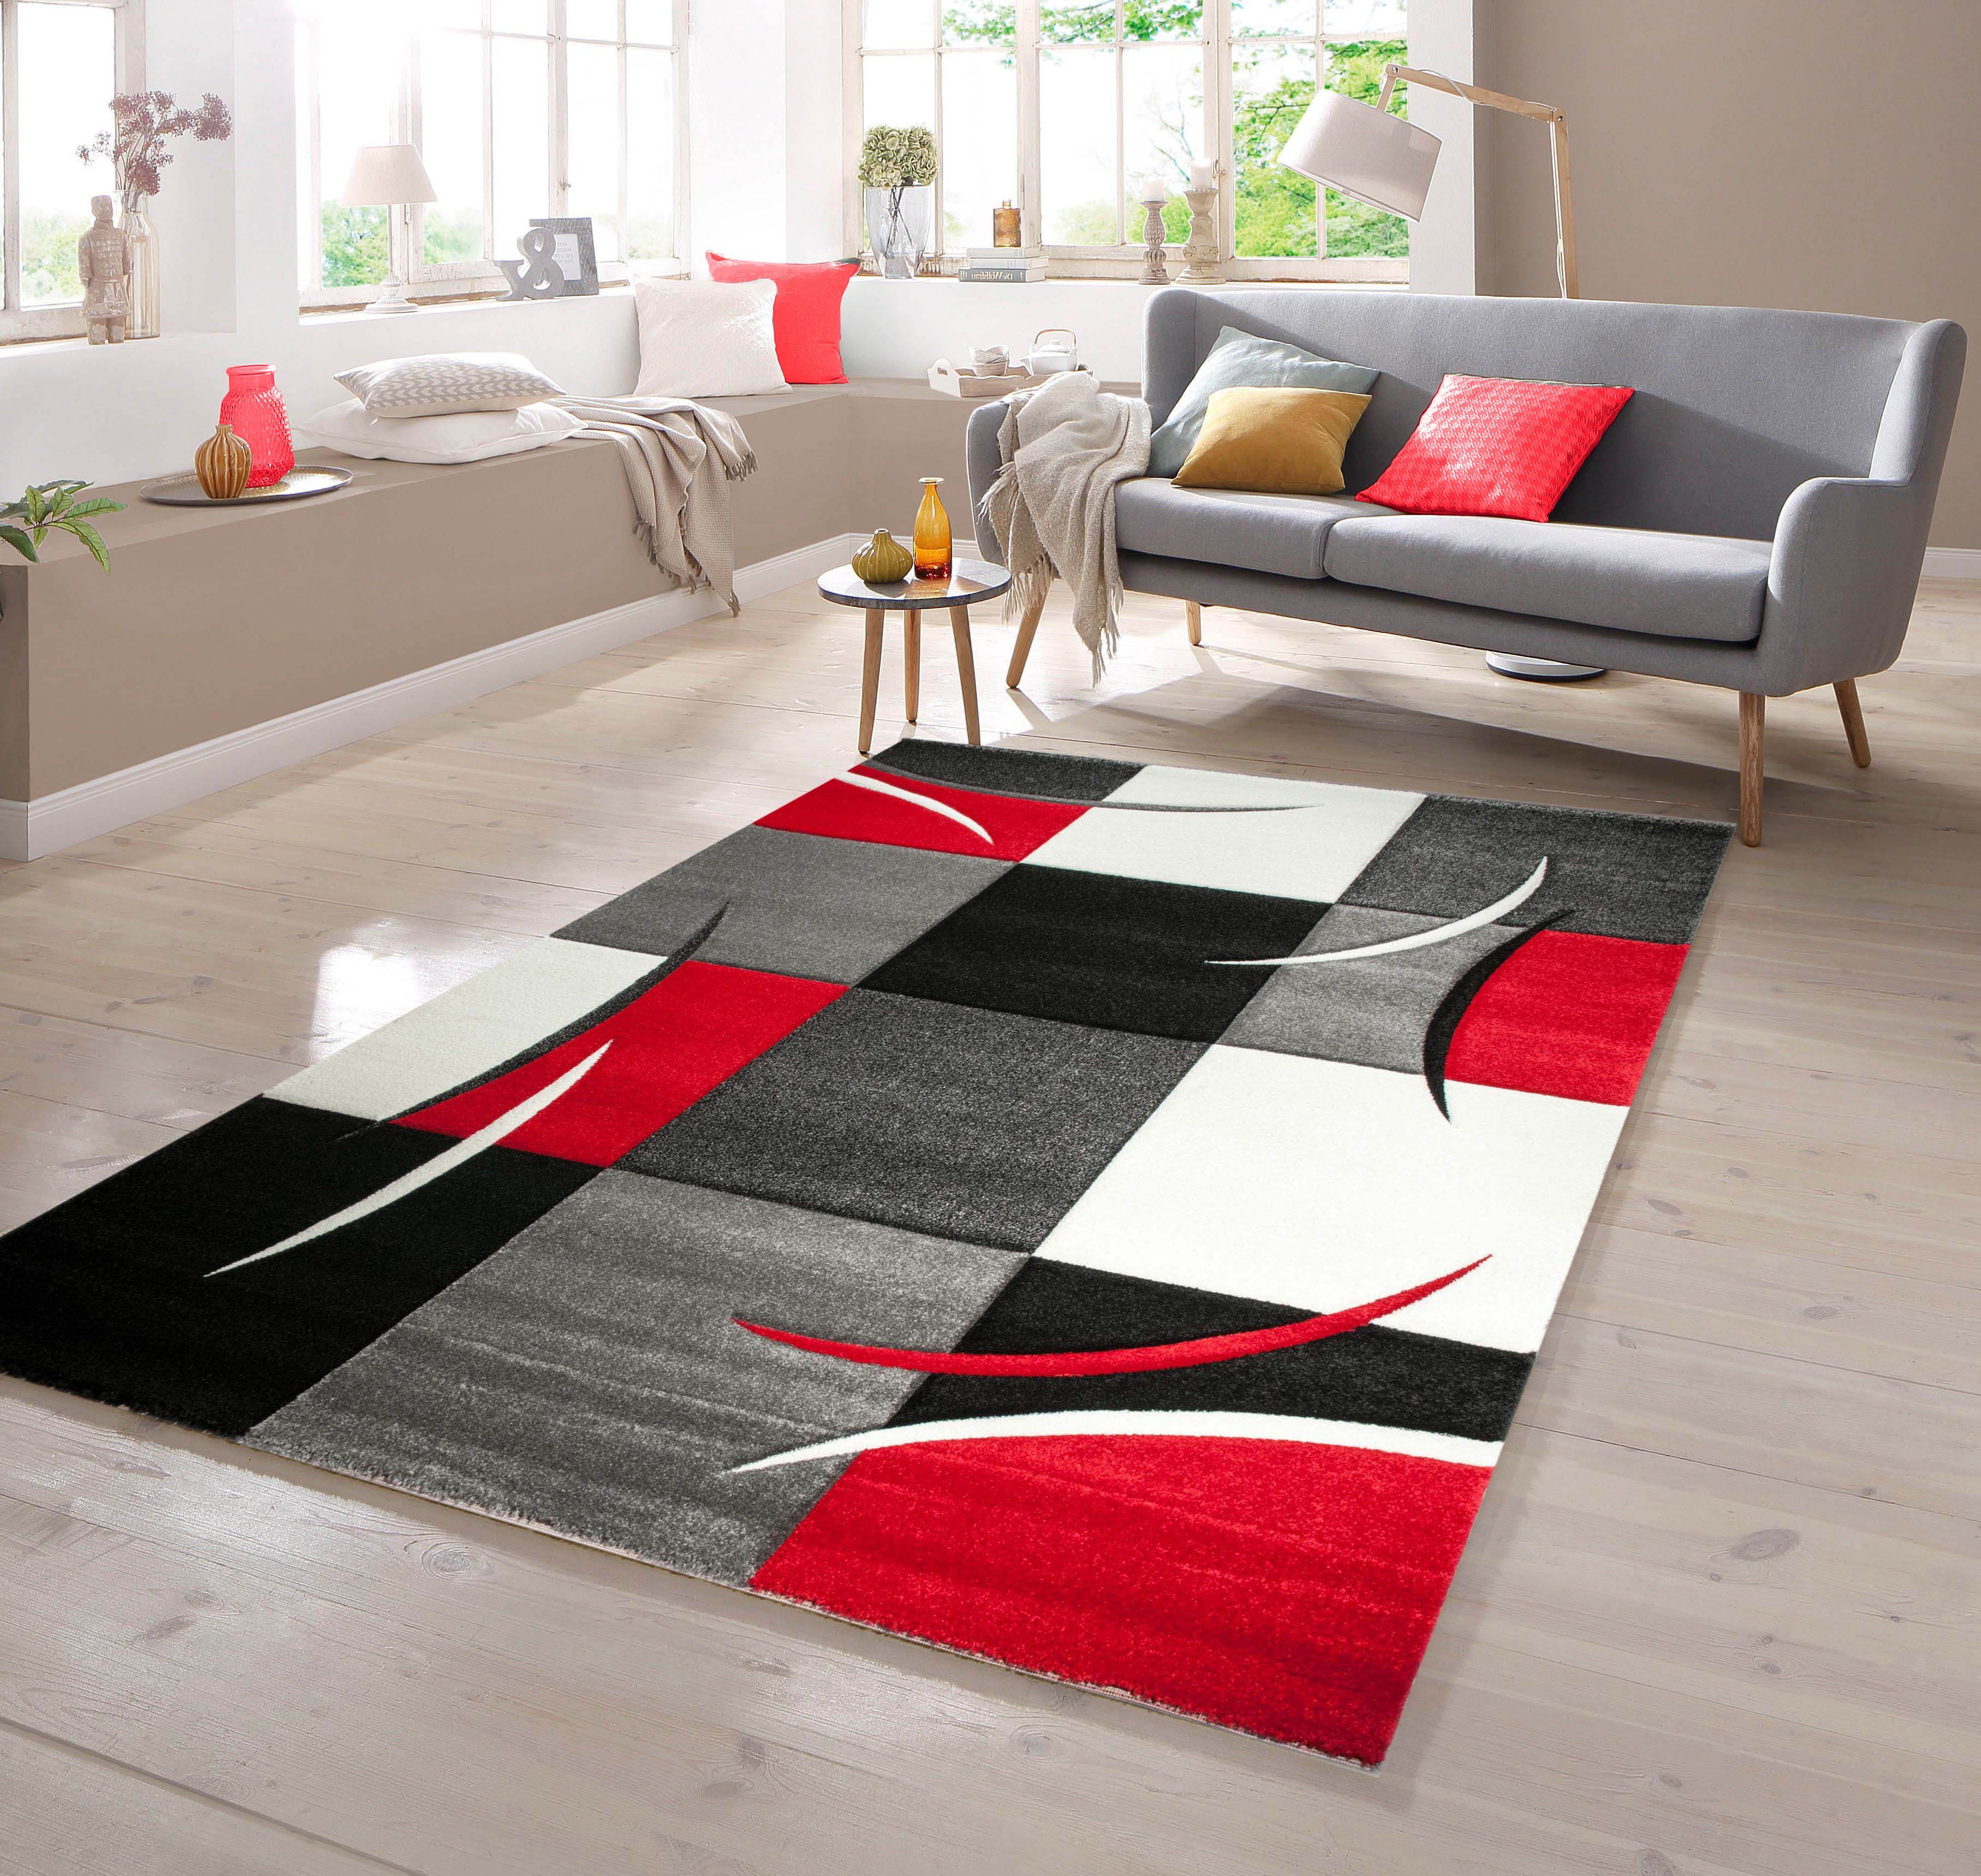 Teppich Designer Teppich mit Konturenschnitt Karo Muster Rot Grau Weiß Schwarz, TeppichHome24, rechteckig